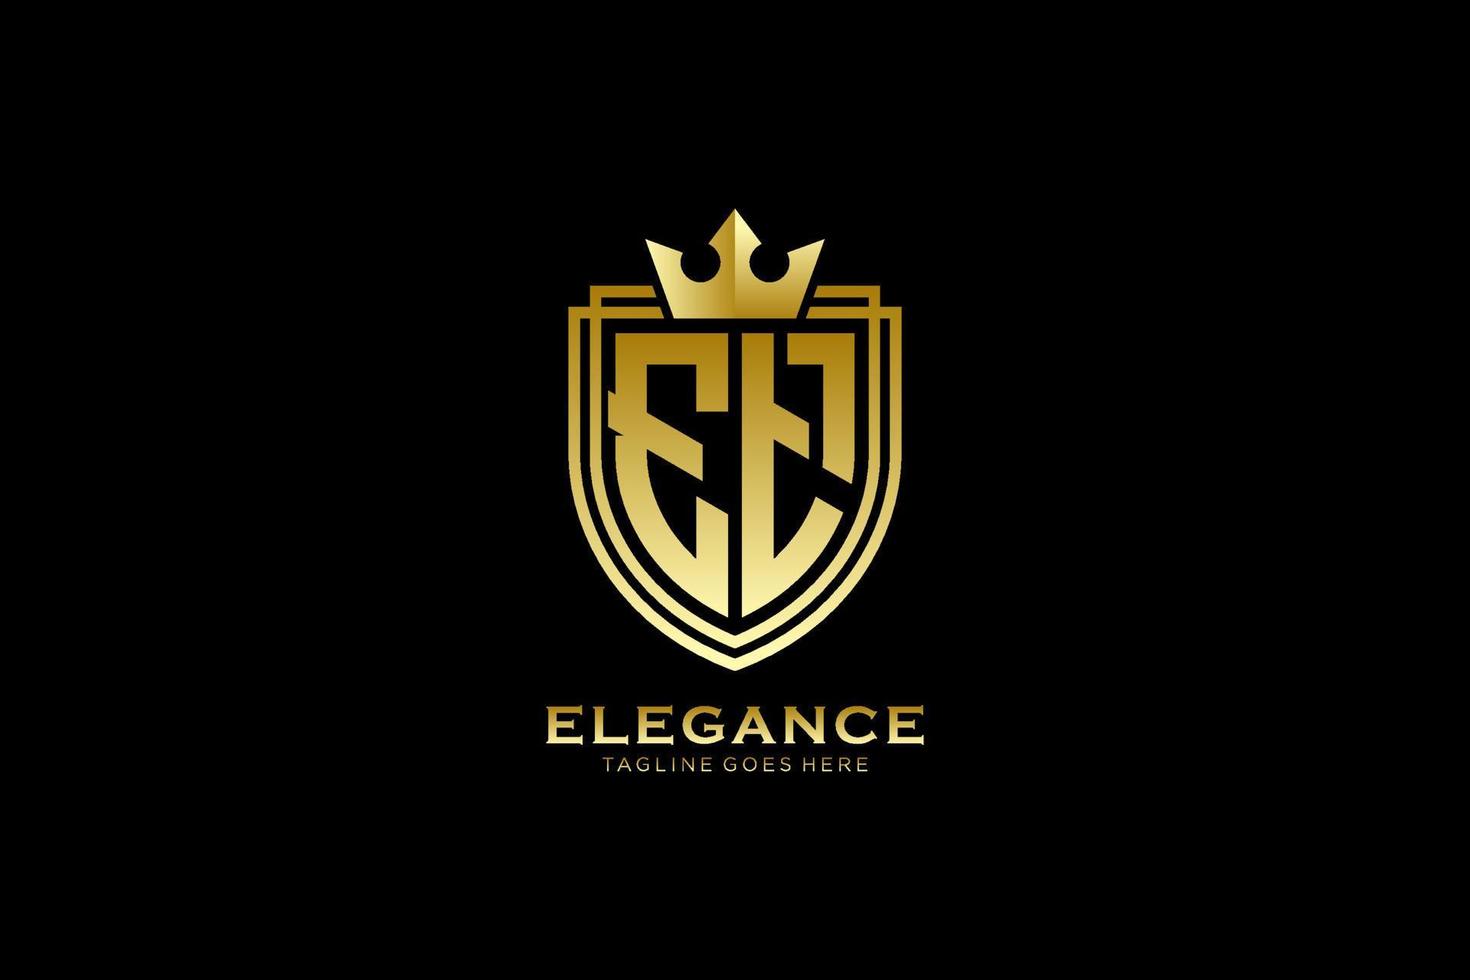 första et elegant lyx monogram logotyp eller bricka mall med rullar och kunglig krona - perfekt för lyxig branding projekt vektor